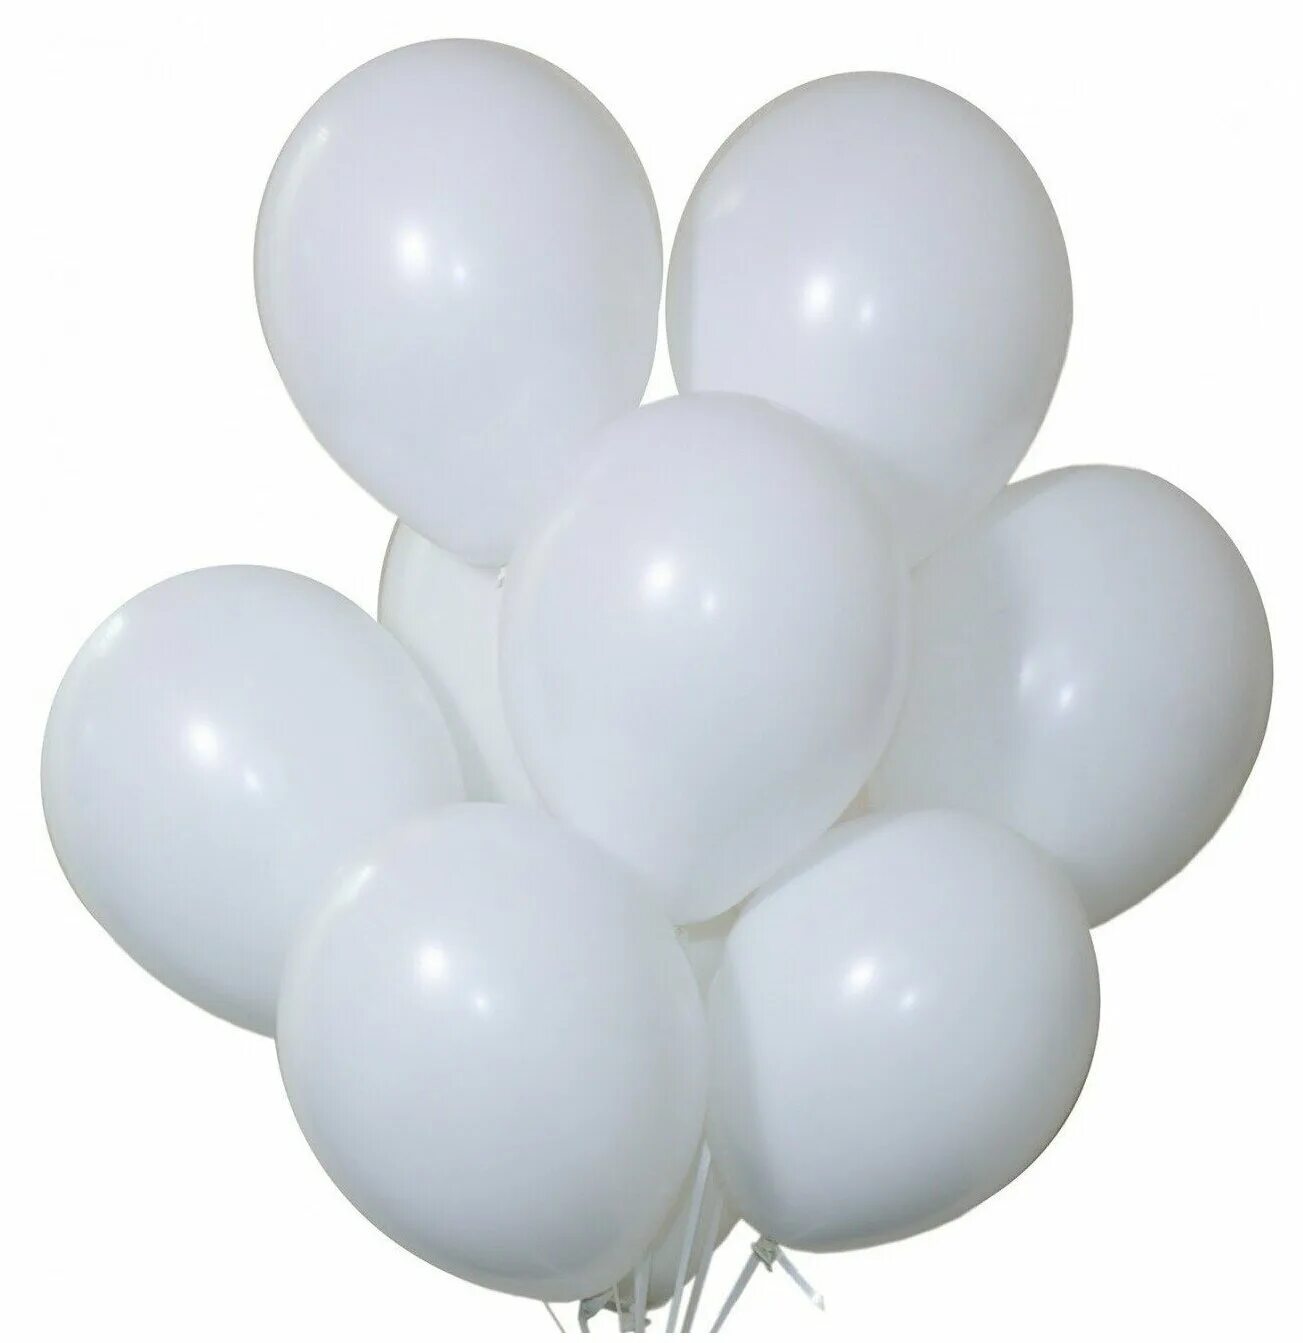 Цвет шара белый. Белые шары. Белый шарик. Белый воздушный шар. Белый воздушный шарик.